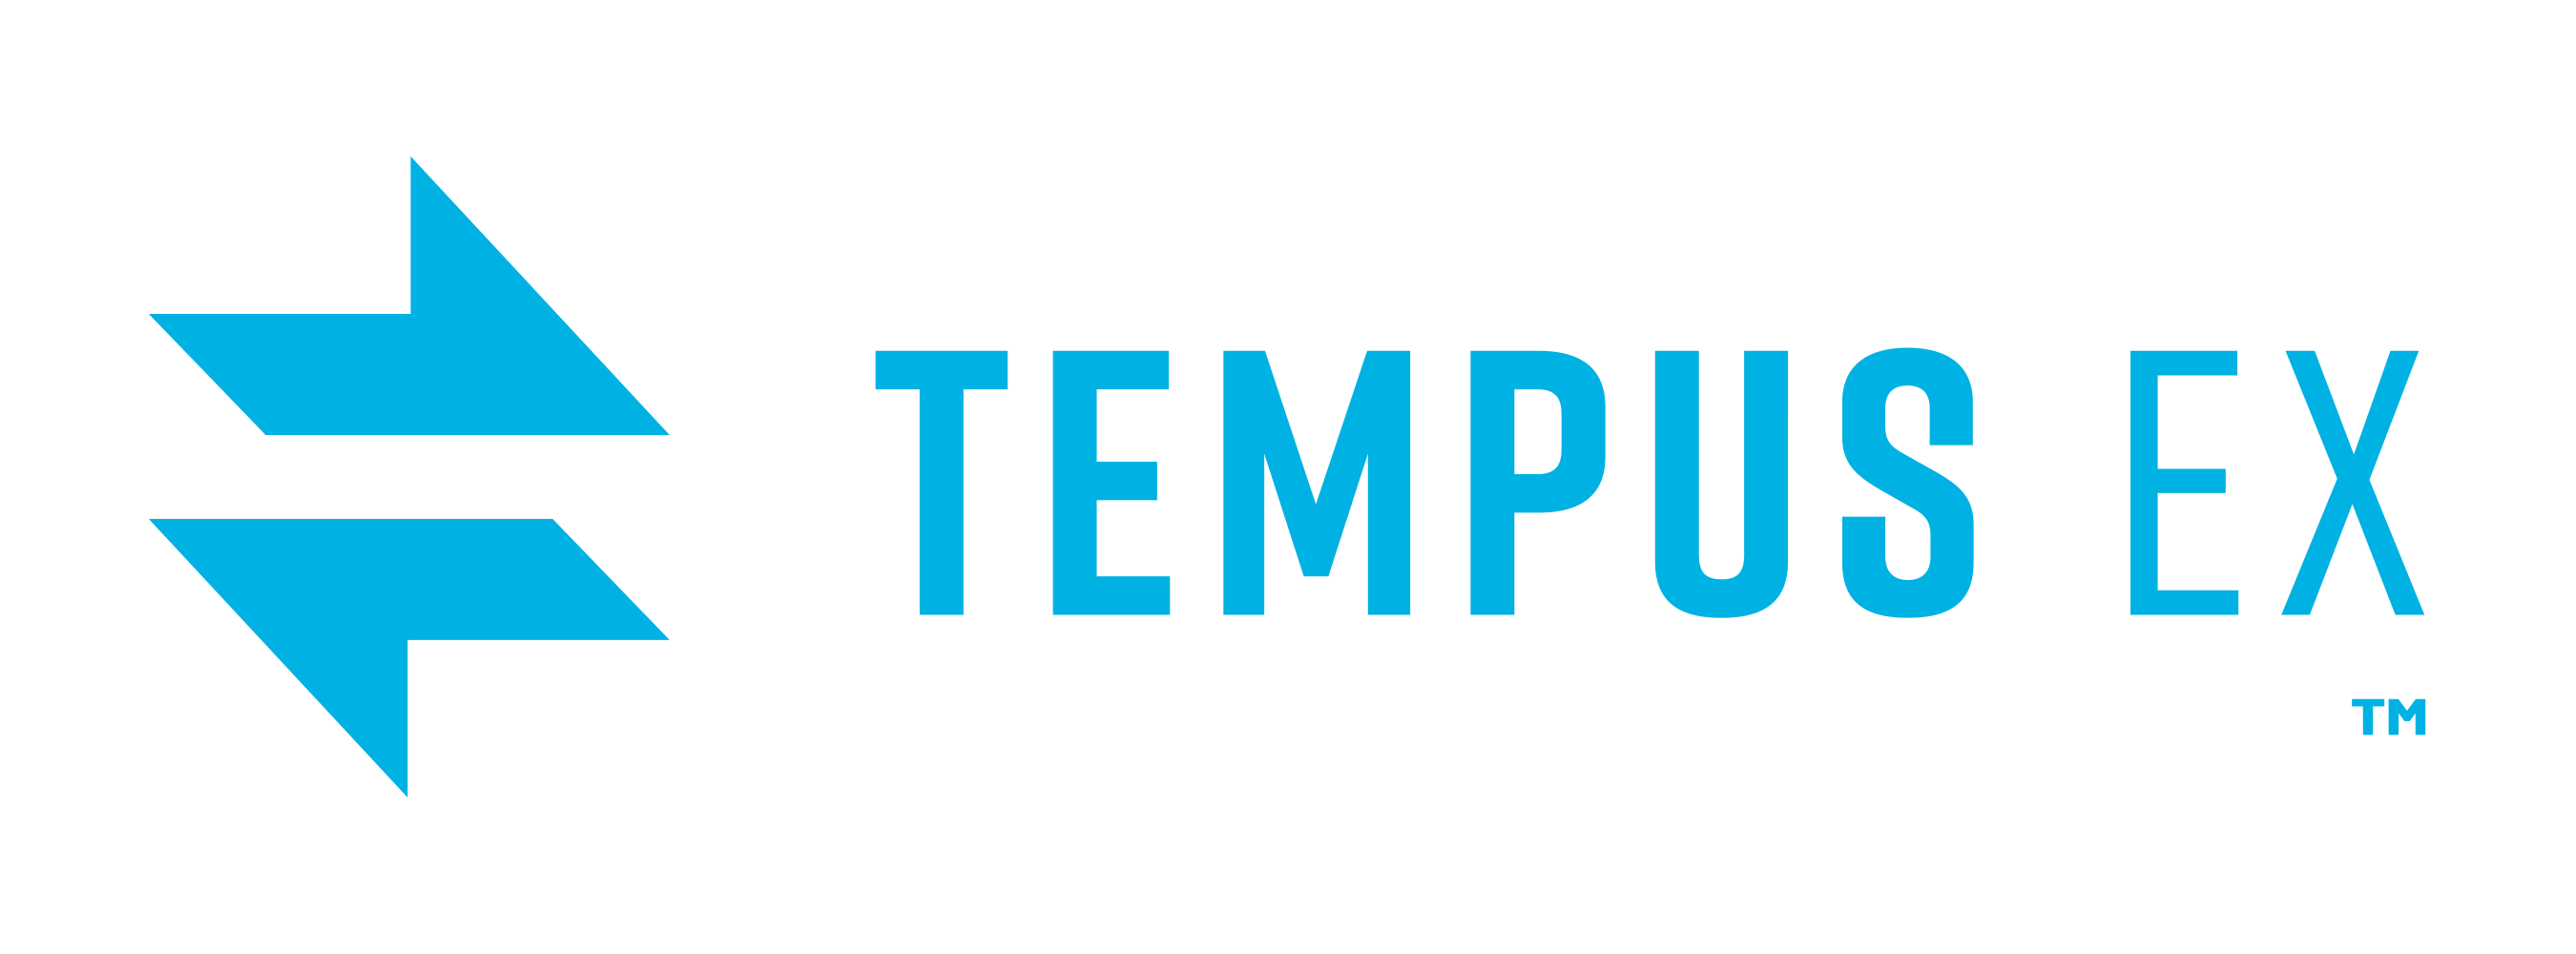 tempus_ex